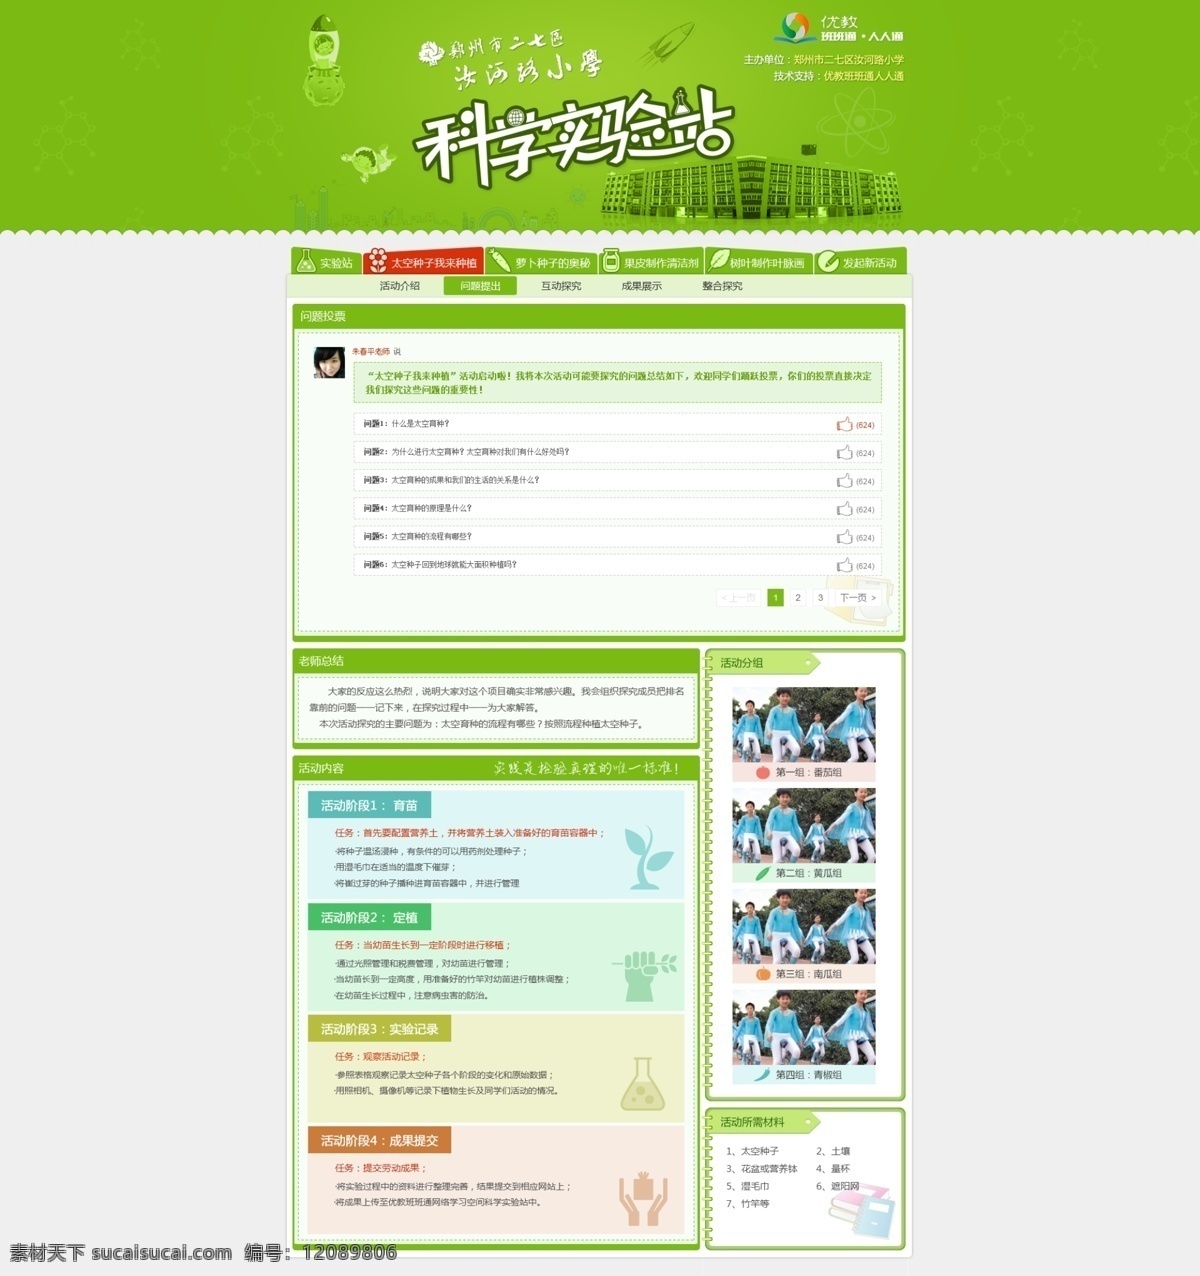 学校网站 科学 实验站 专题 小学生 实验 小学网站 卡通 活泼 绿色 web 界面设计 中文模板